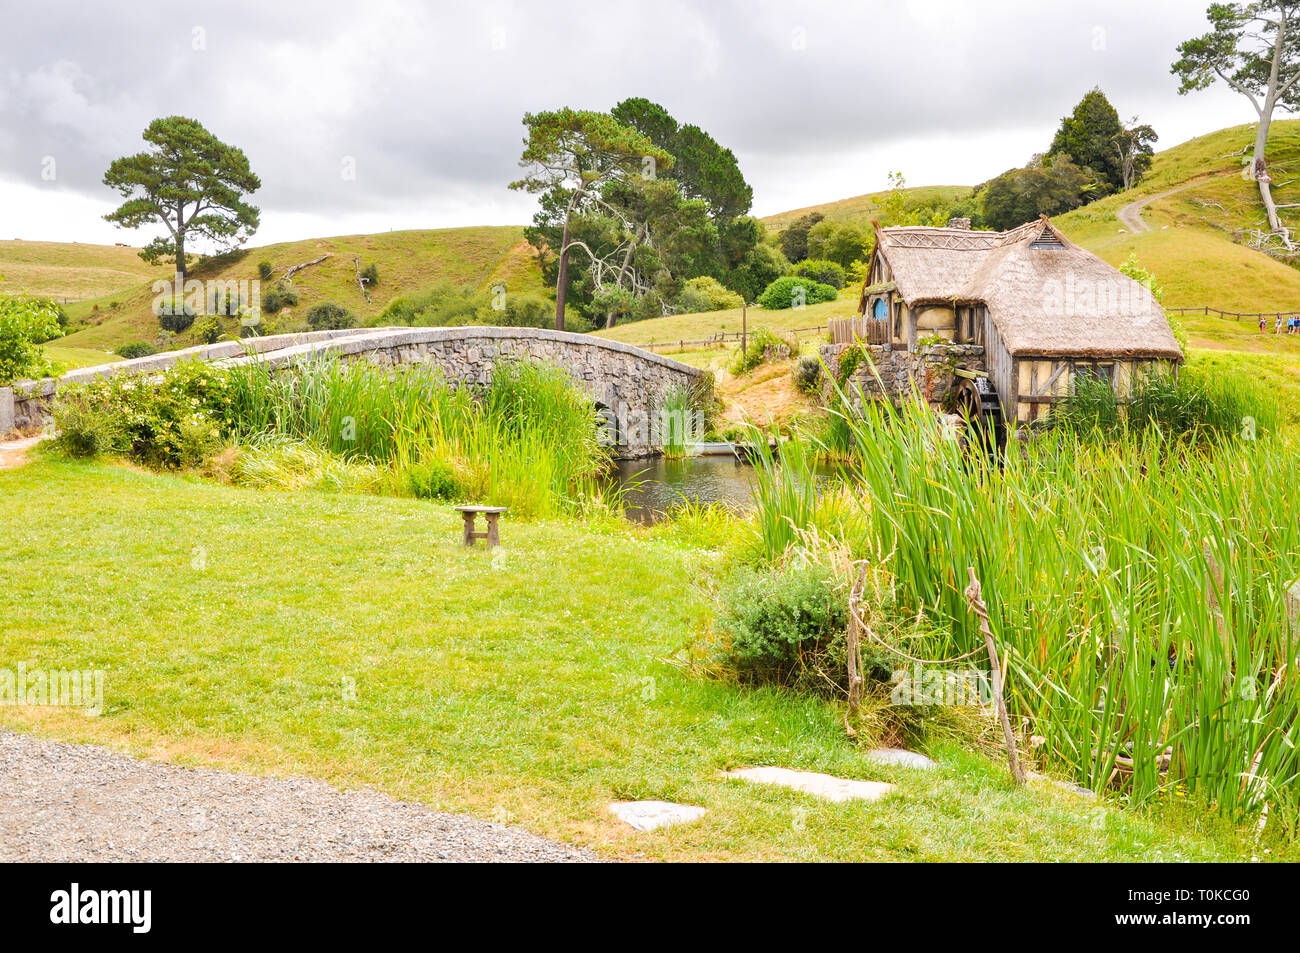 Hobbiton Movie set - Location per il Signore degli Anelli e Lo Hobbit film. Estremità del sacchetto bridge, mulino. attrazione turistica nella regione di Waikato in Nuova Zelanda Foto Stock